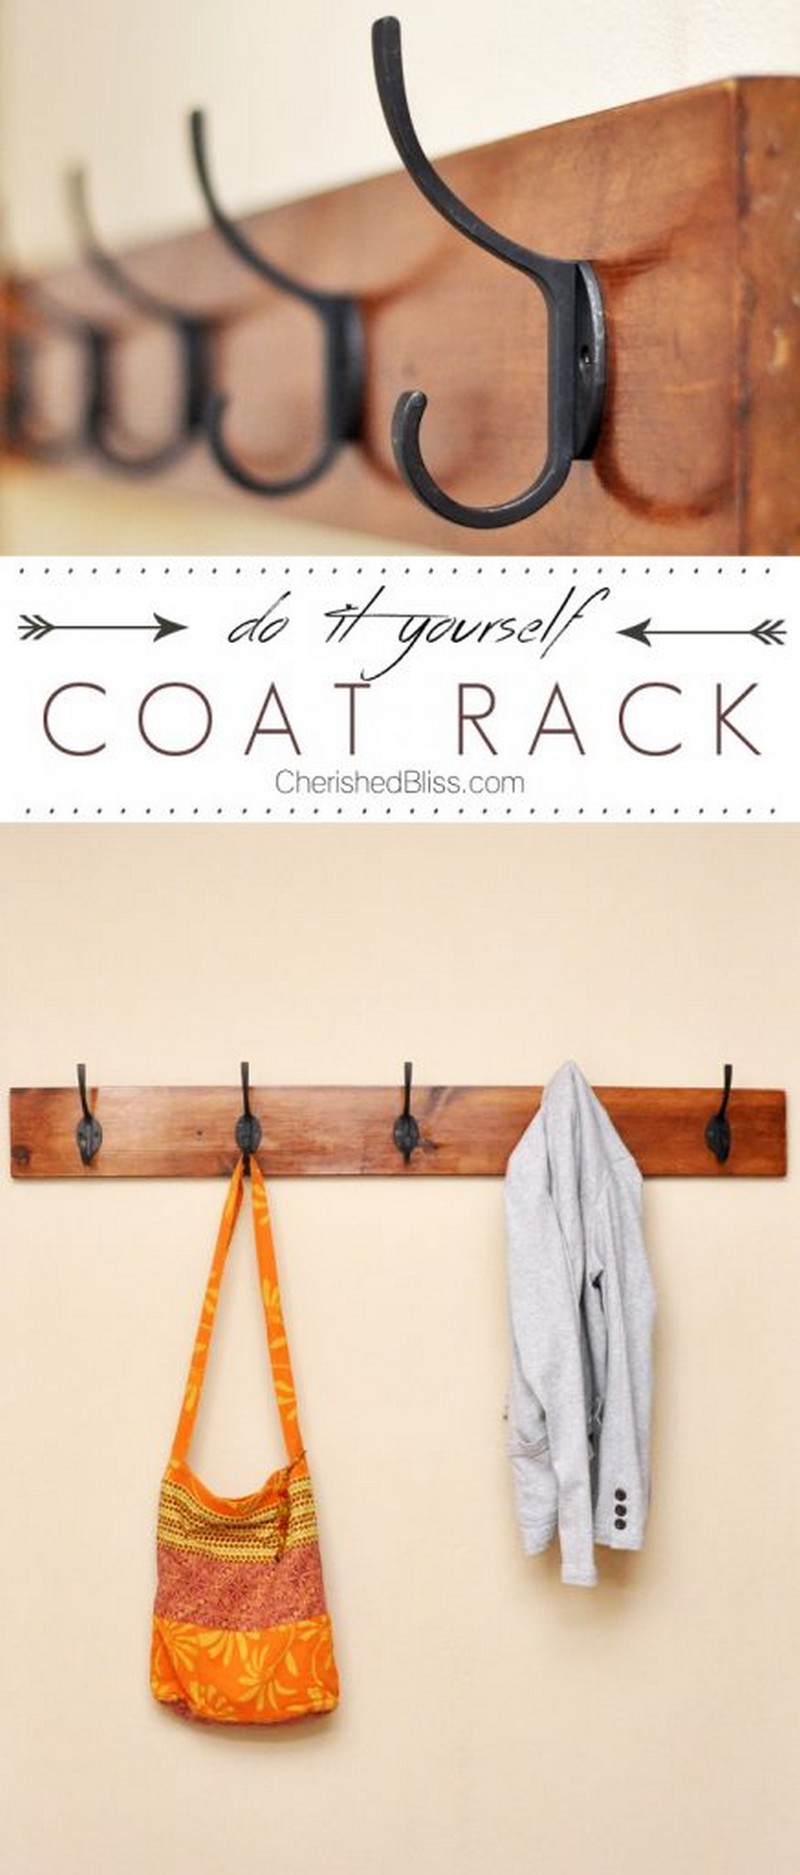 DIY Coat Rack Tutorial